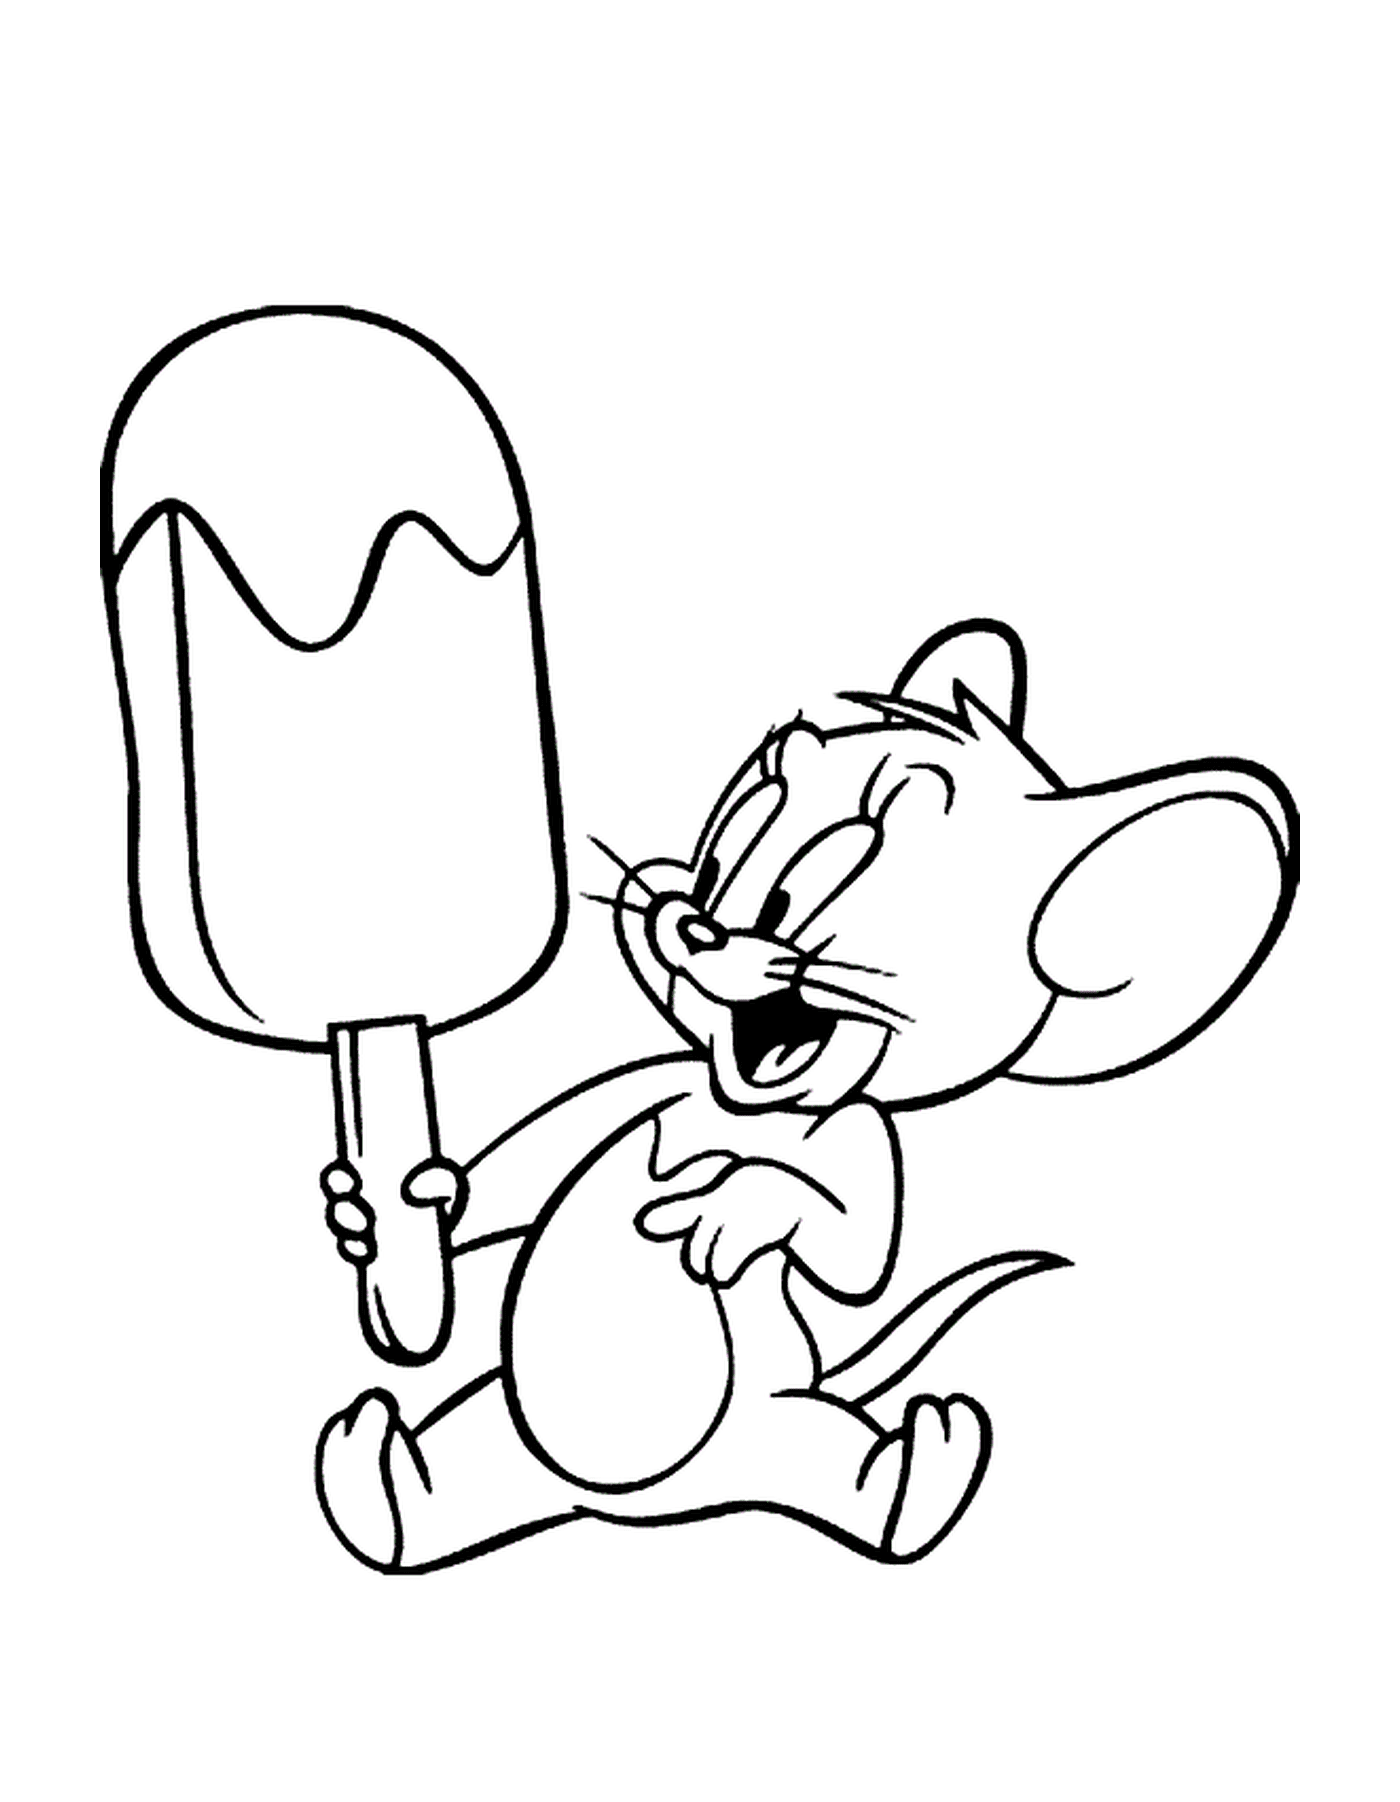  Un topo che tiene un gelato 